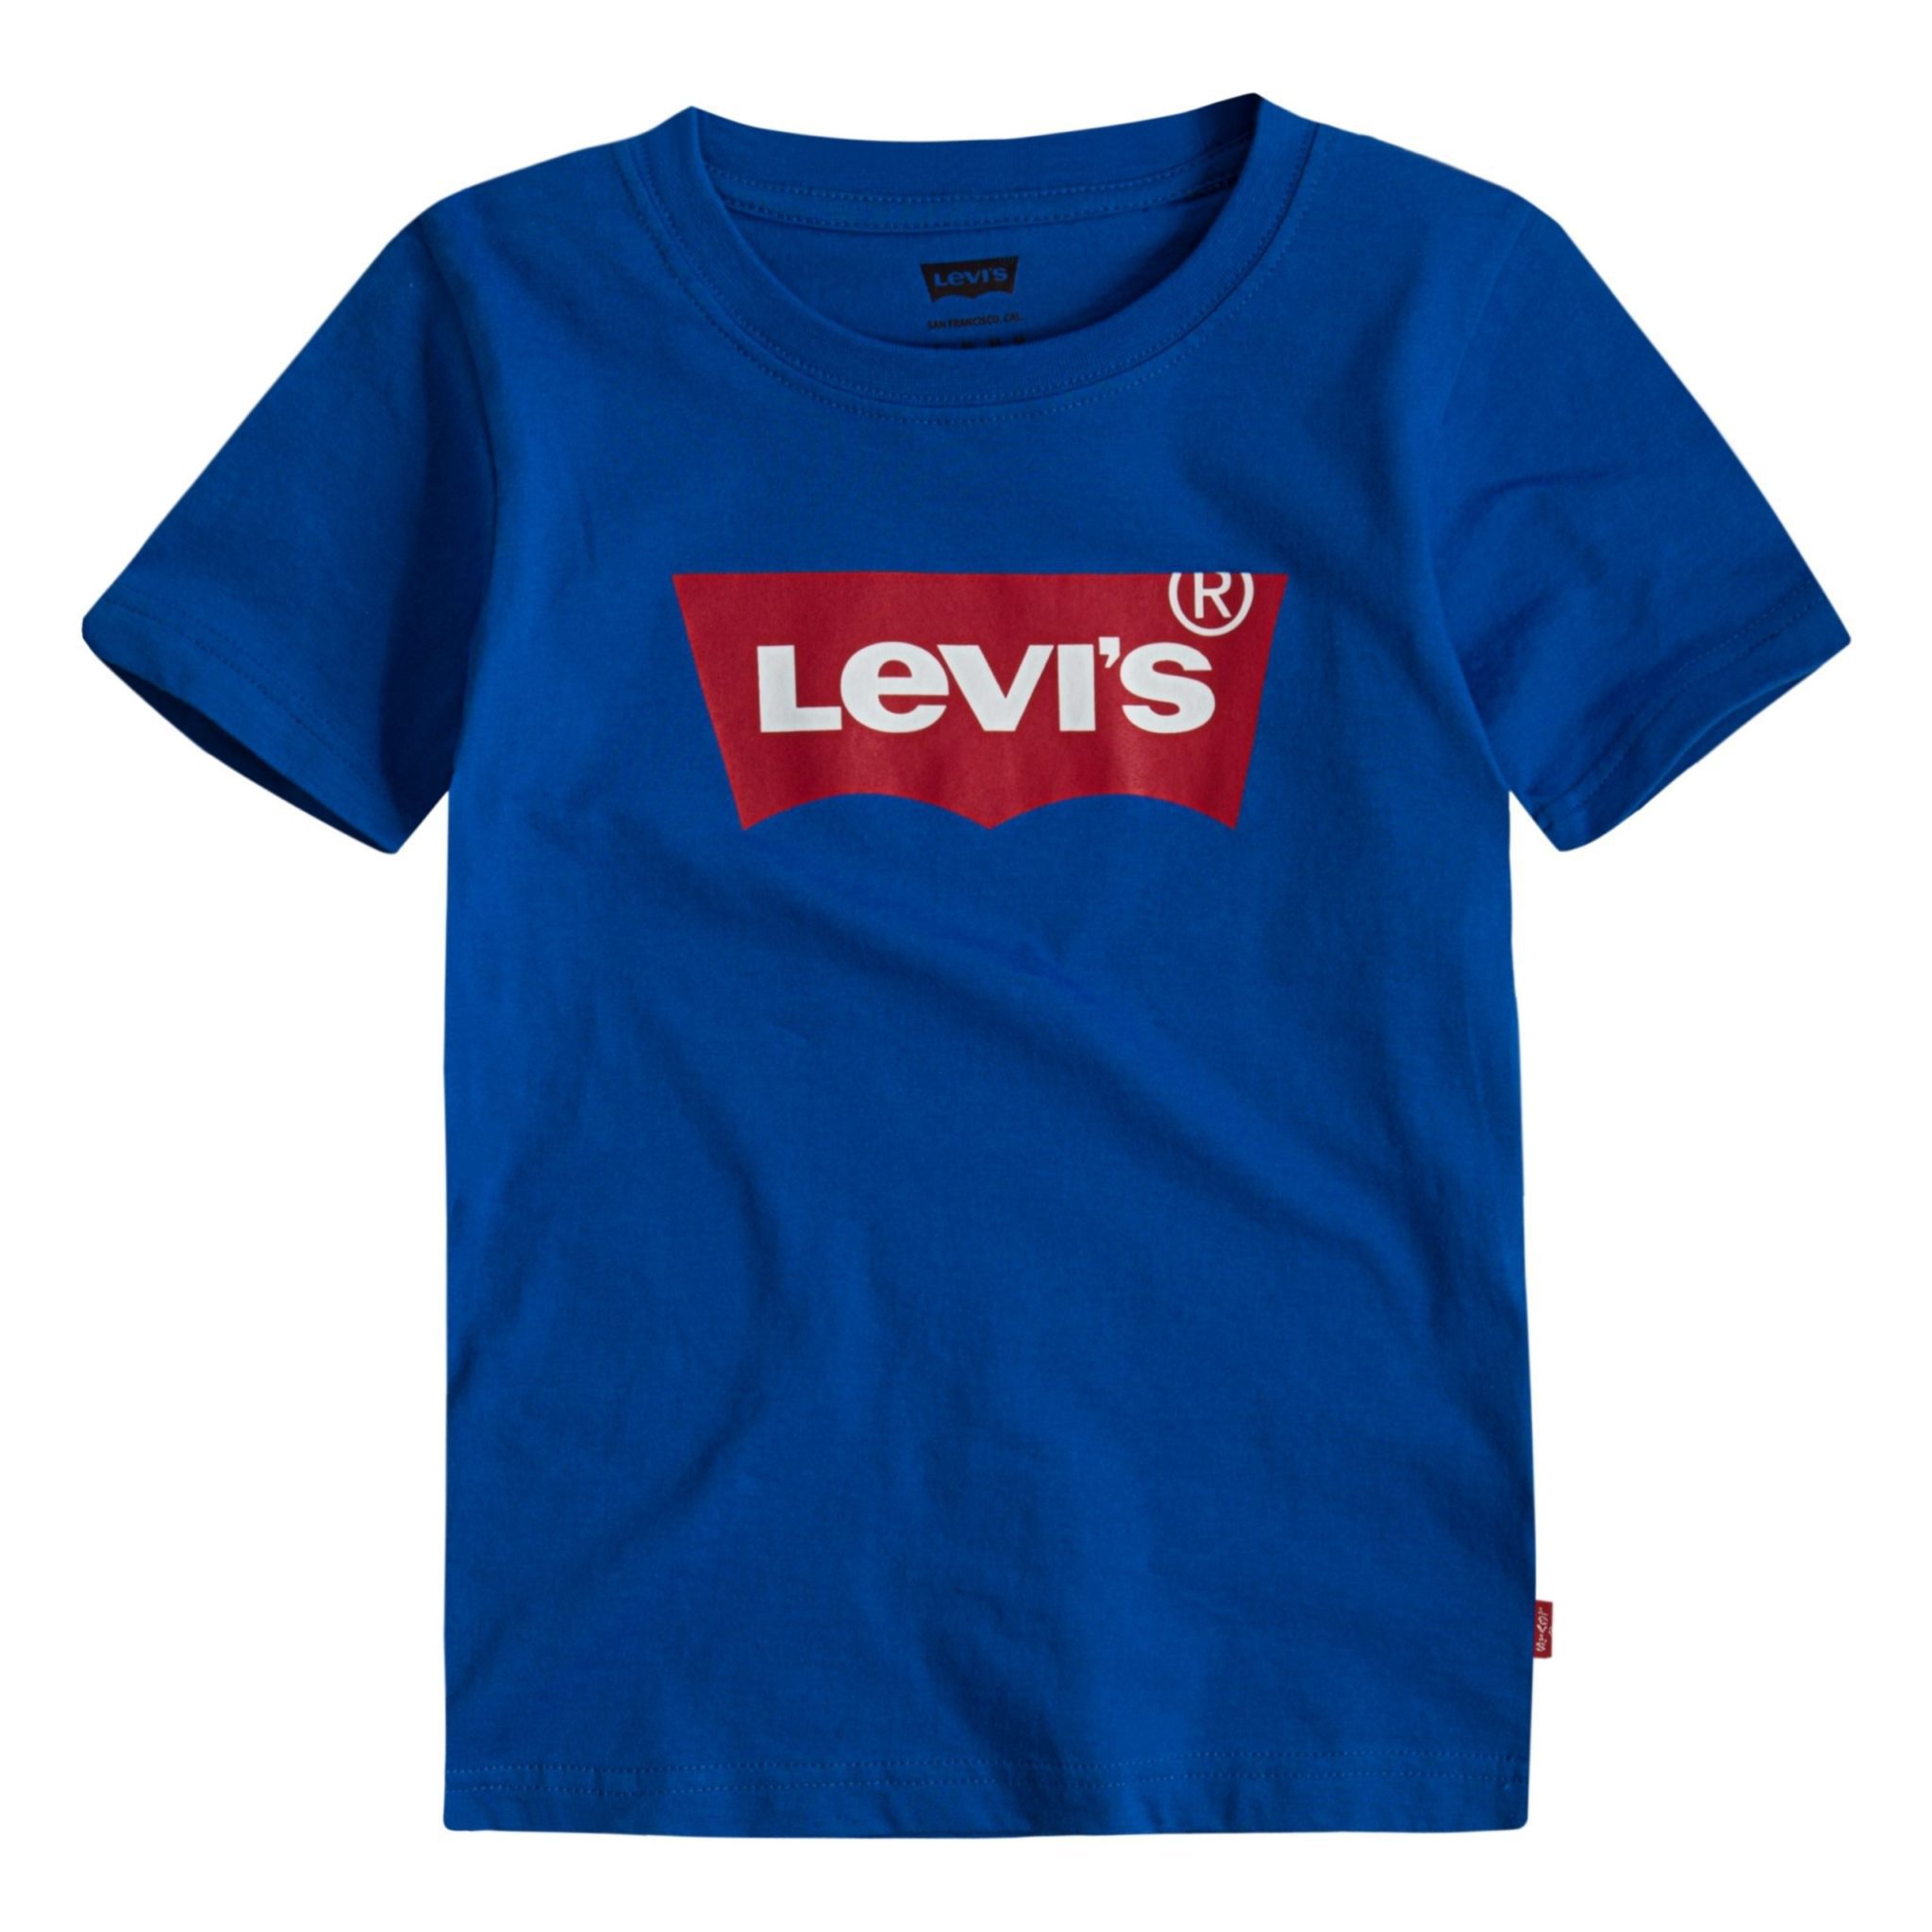 Levis Blue T-Shirt 8E8157 - Little Angels Childrenswear